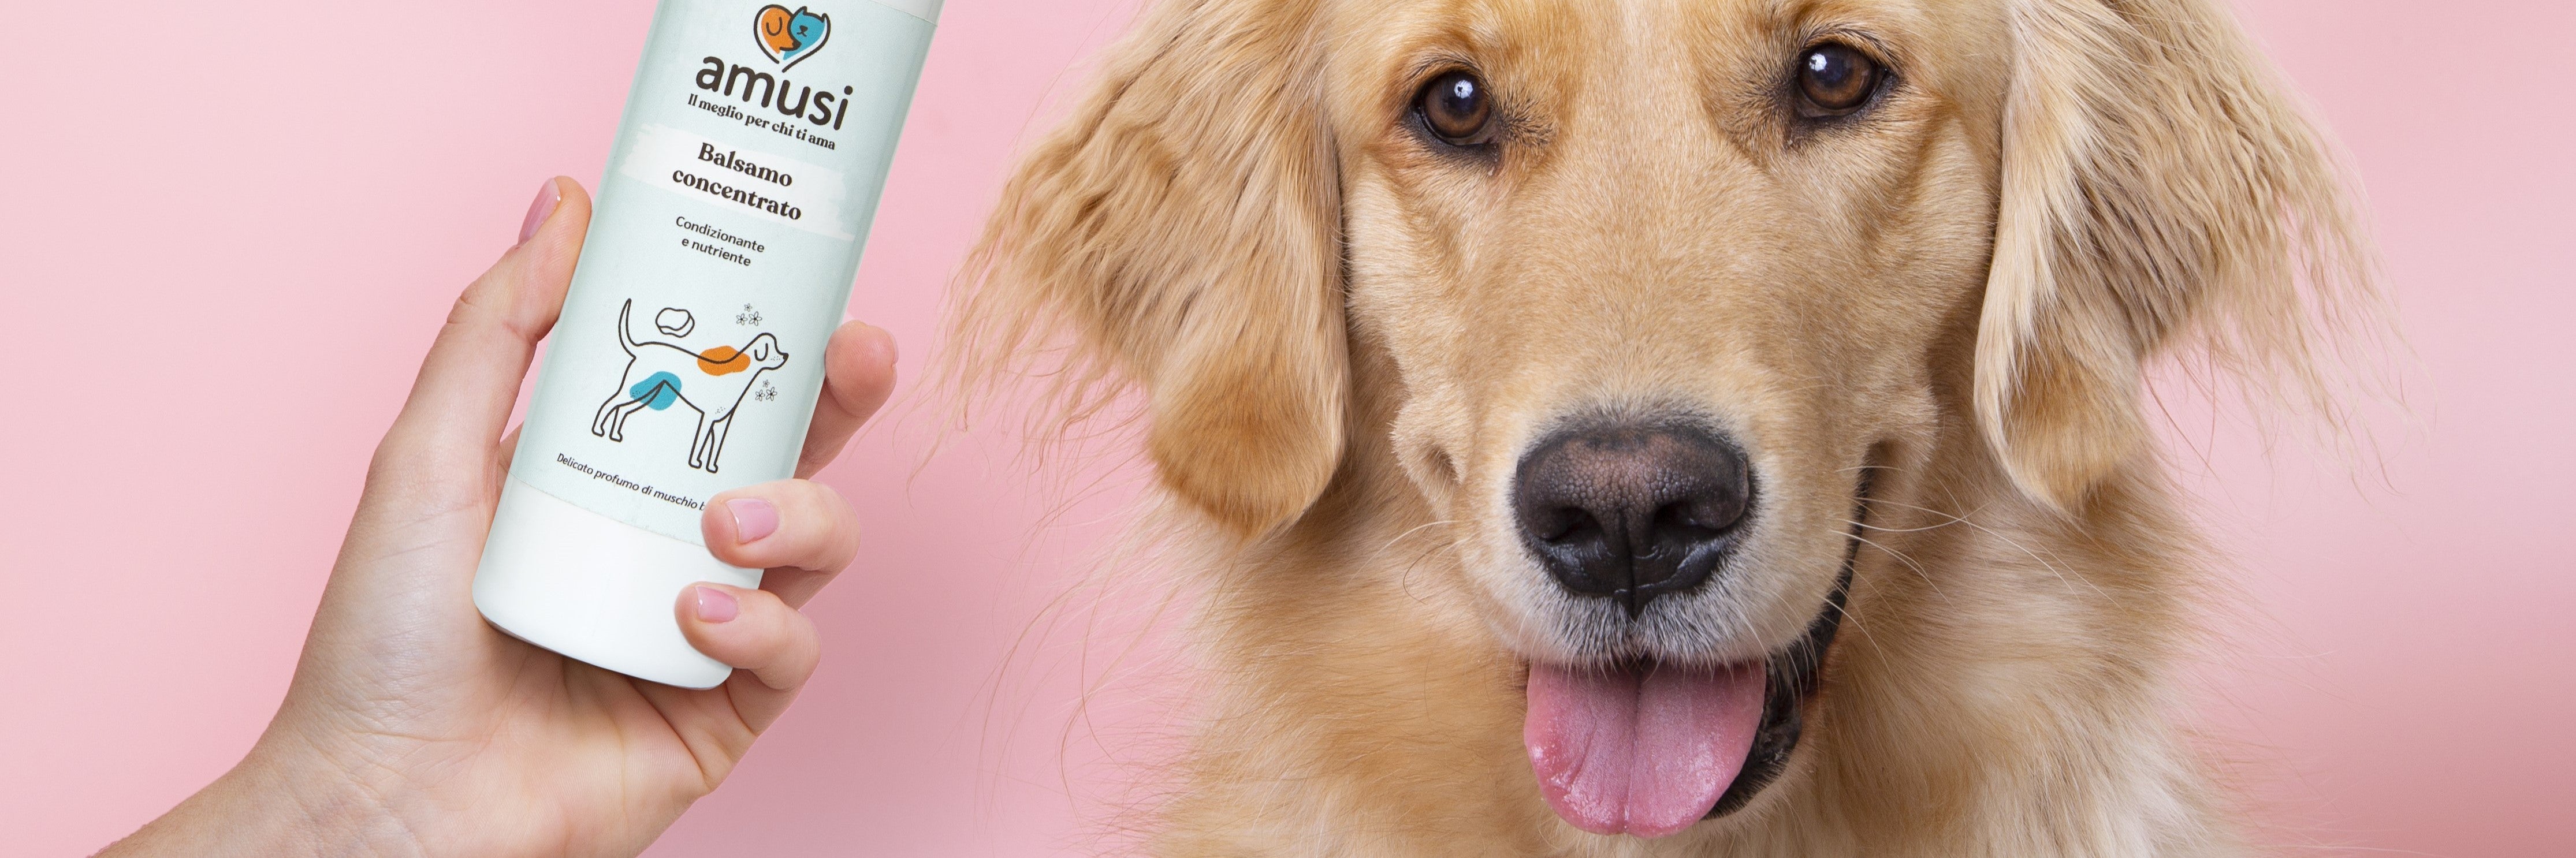 shampoo e balsami per cane